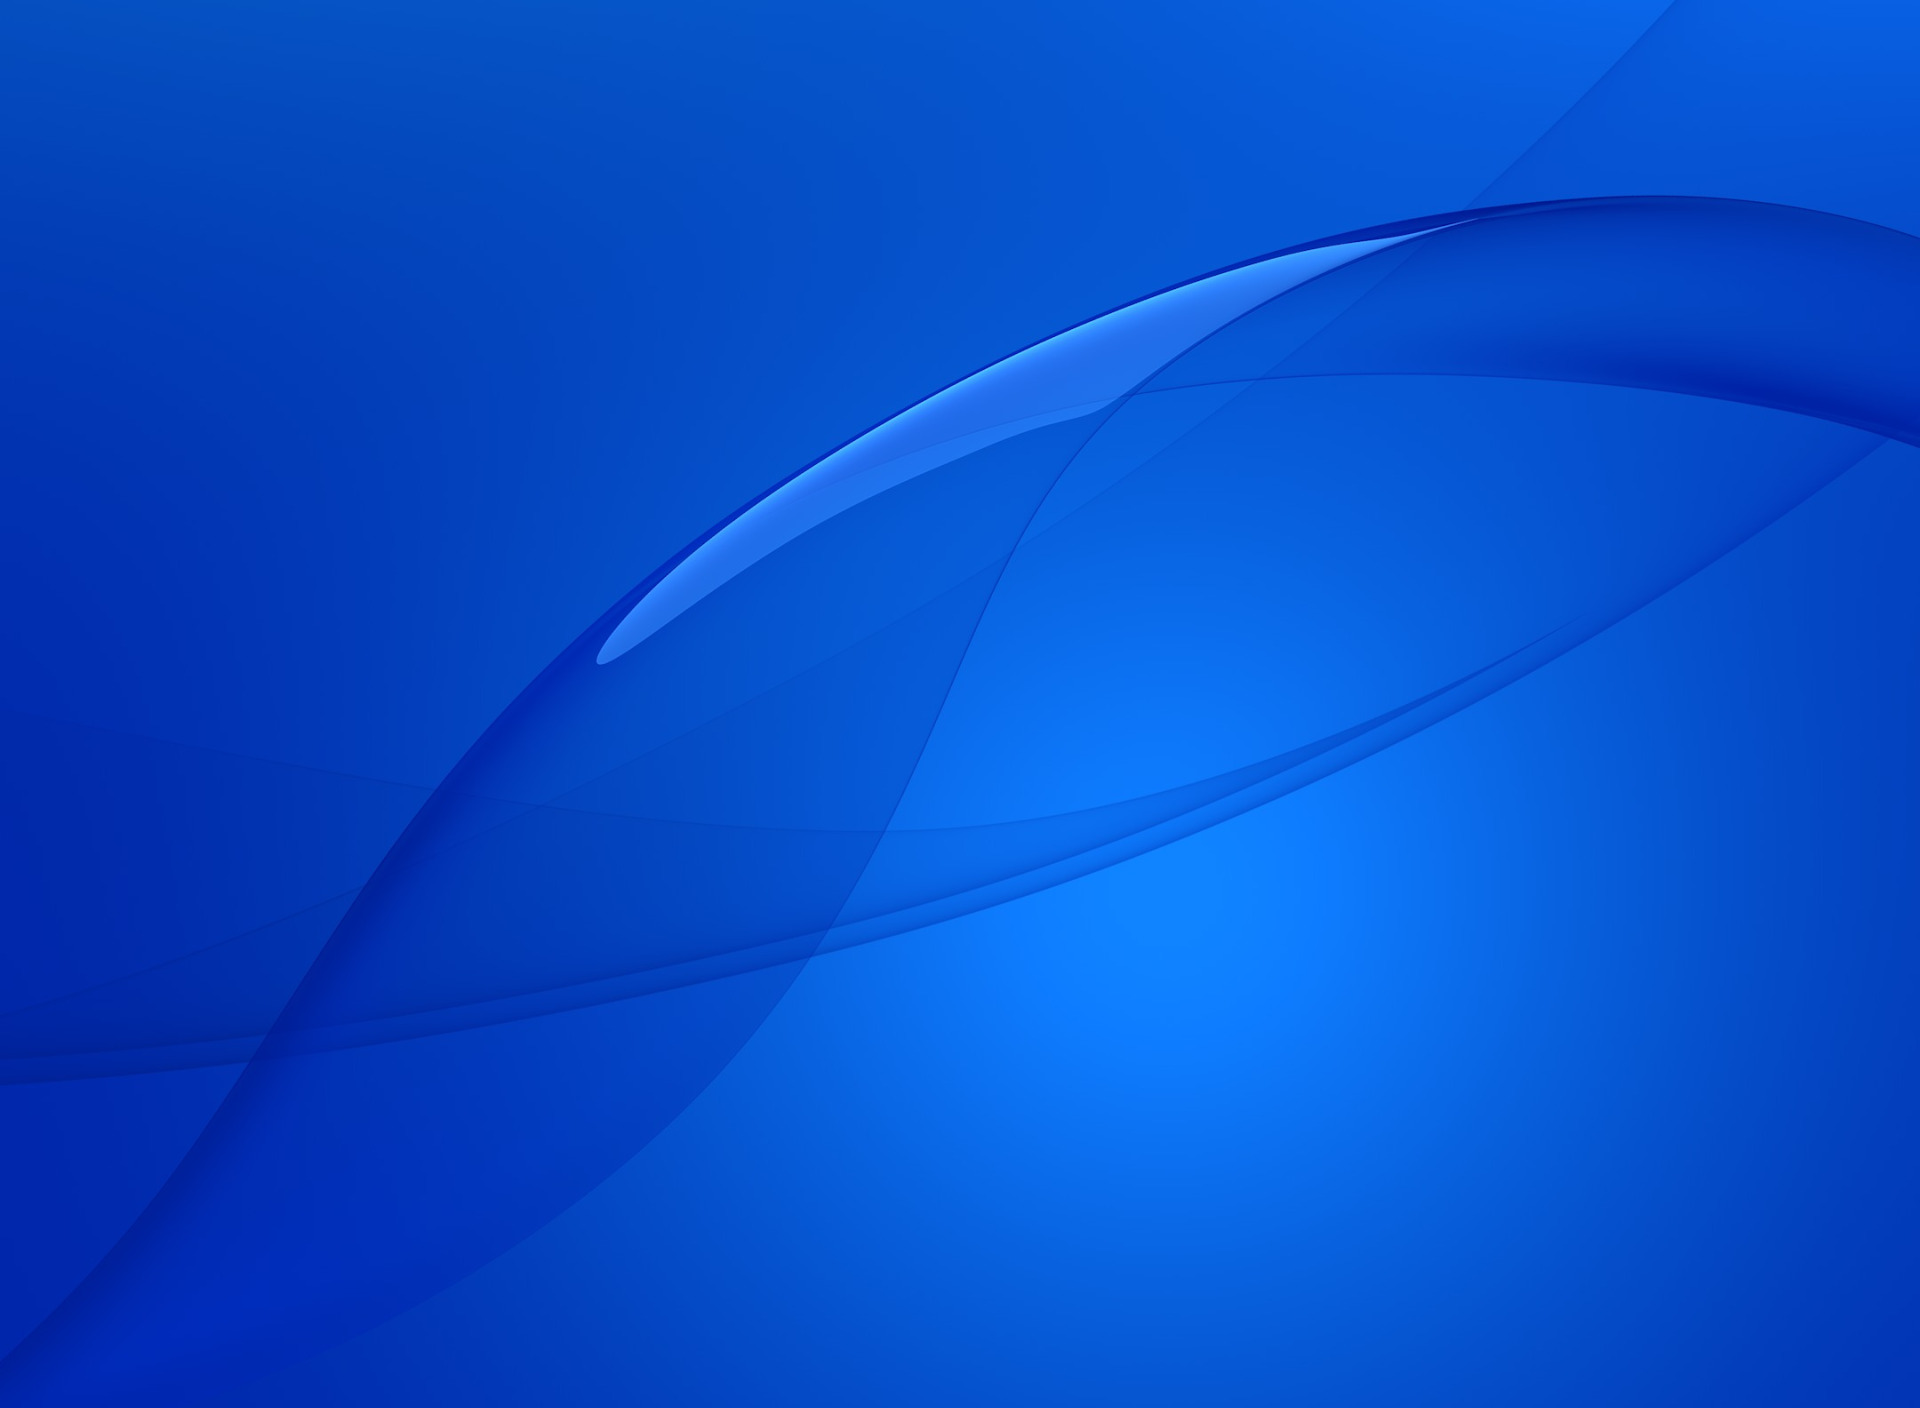 Sony Xperia z3 Premium. Обои сони иксперия z3. Красивый темно синий фон. Обои для Sony Xperia z.